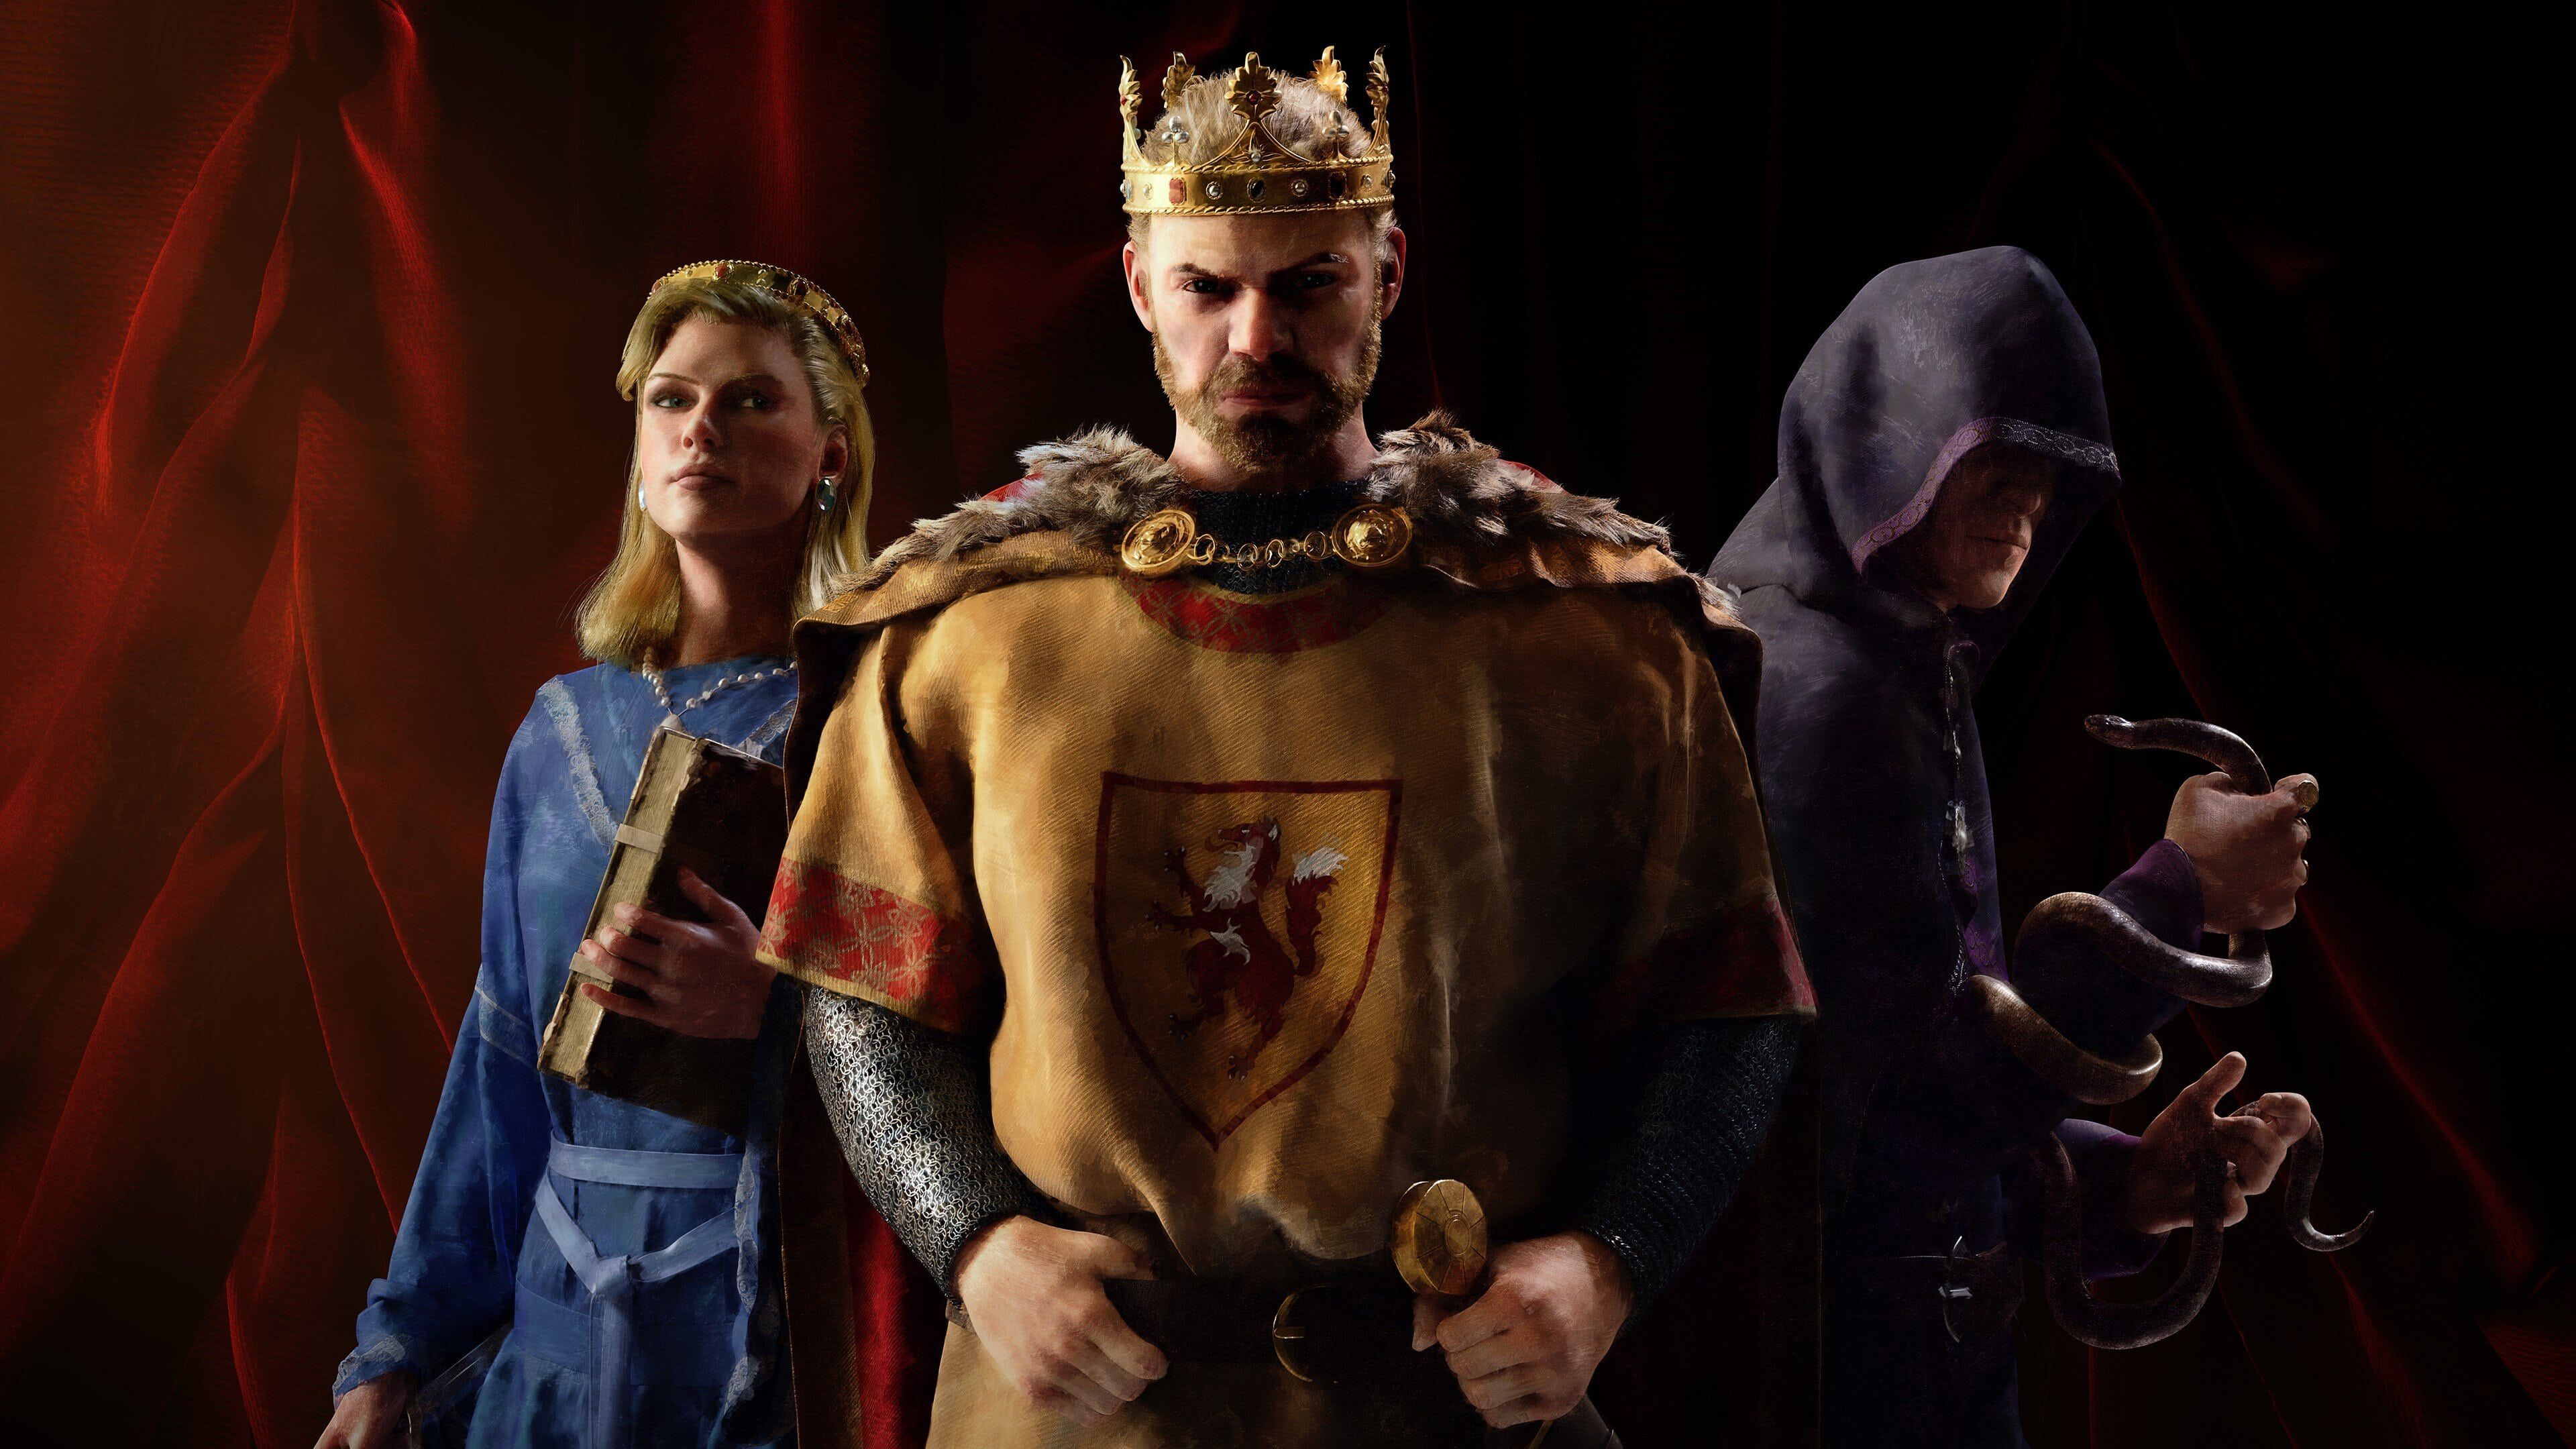 crusader kings iii.